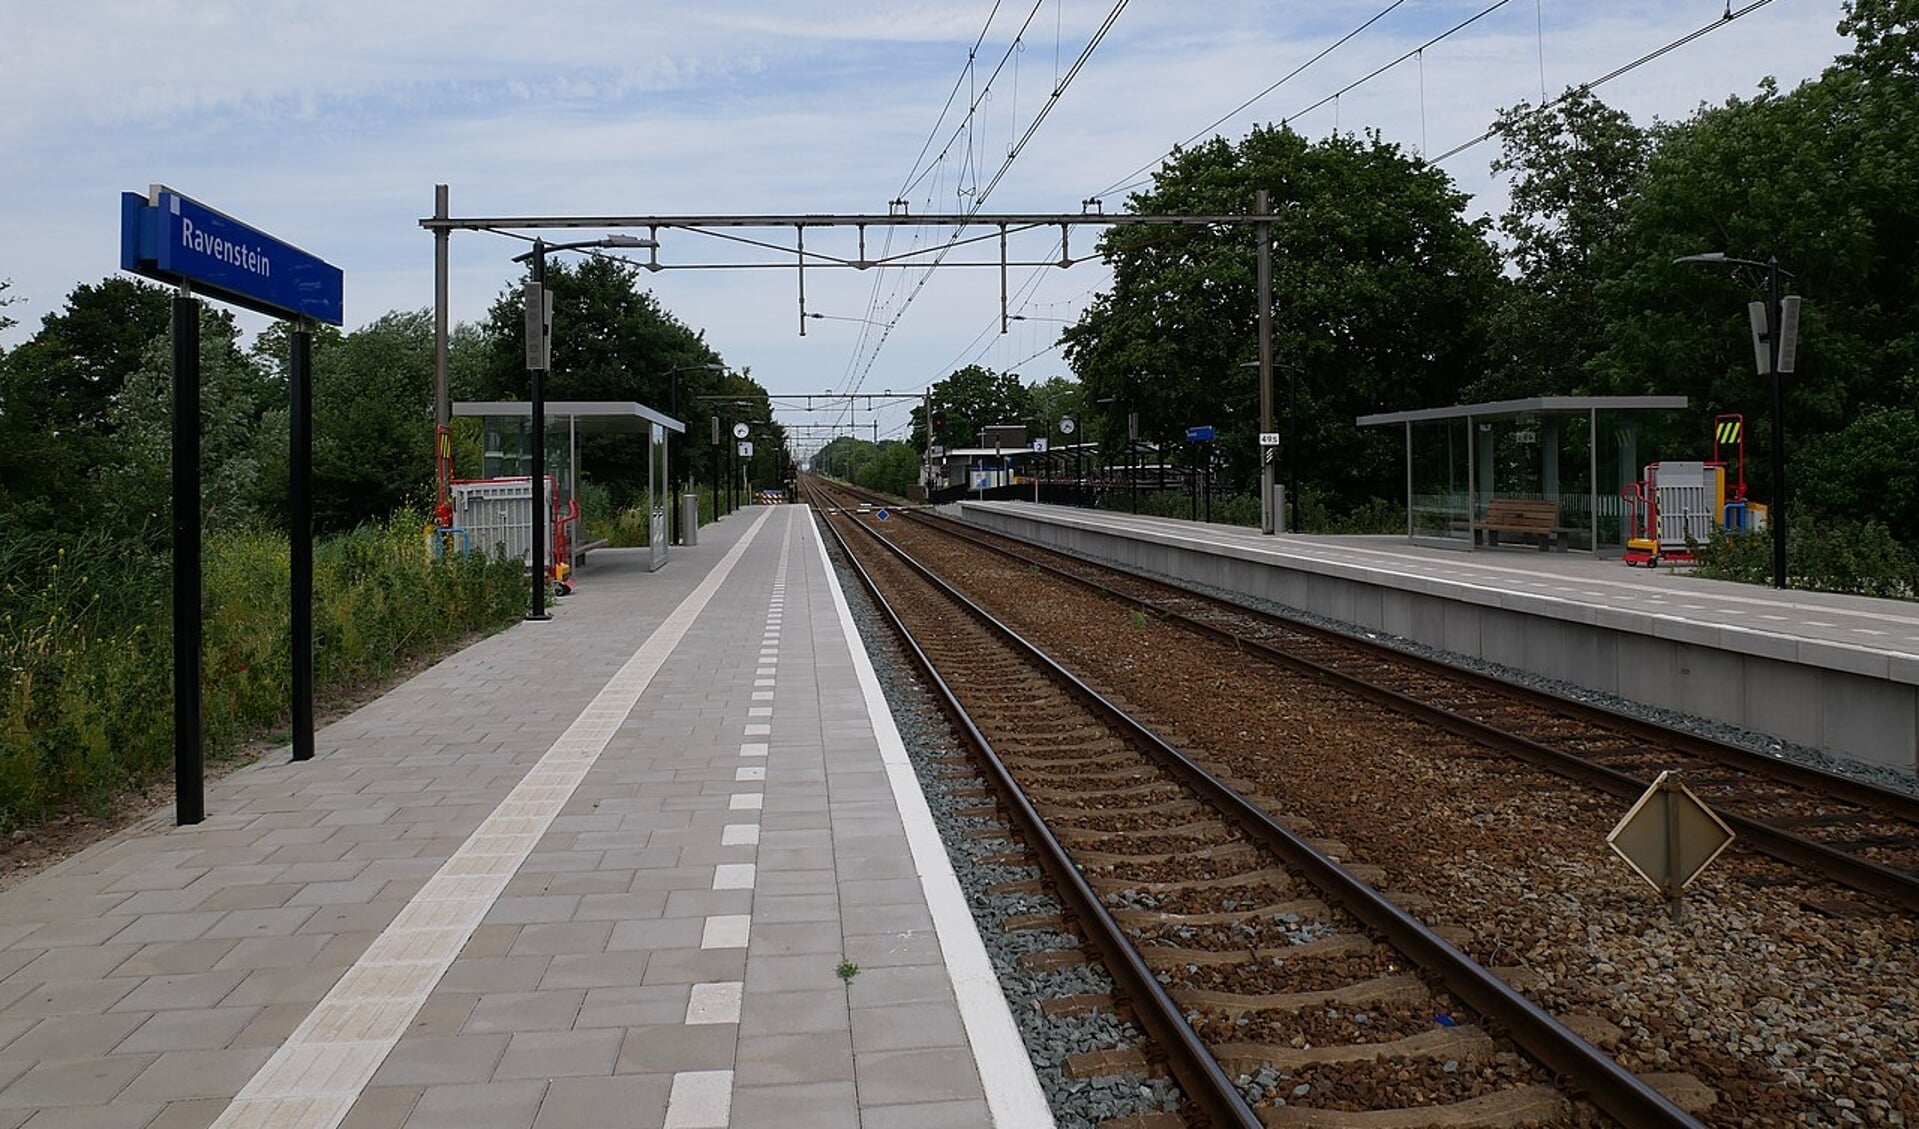 Station Ravenstein, spoor 1.